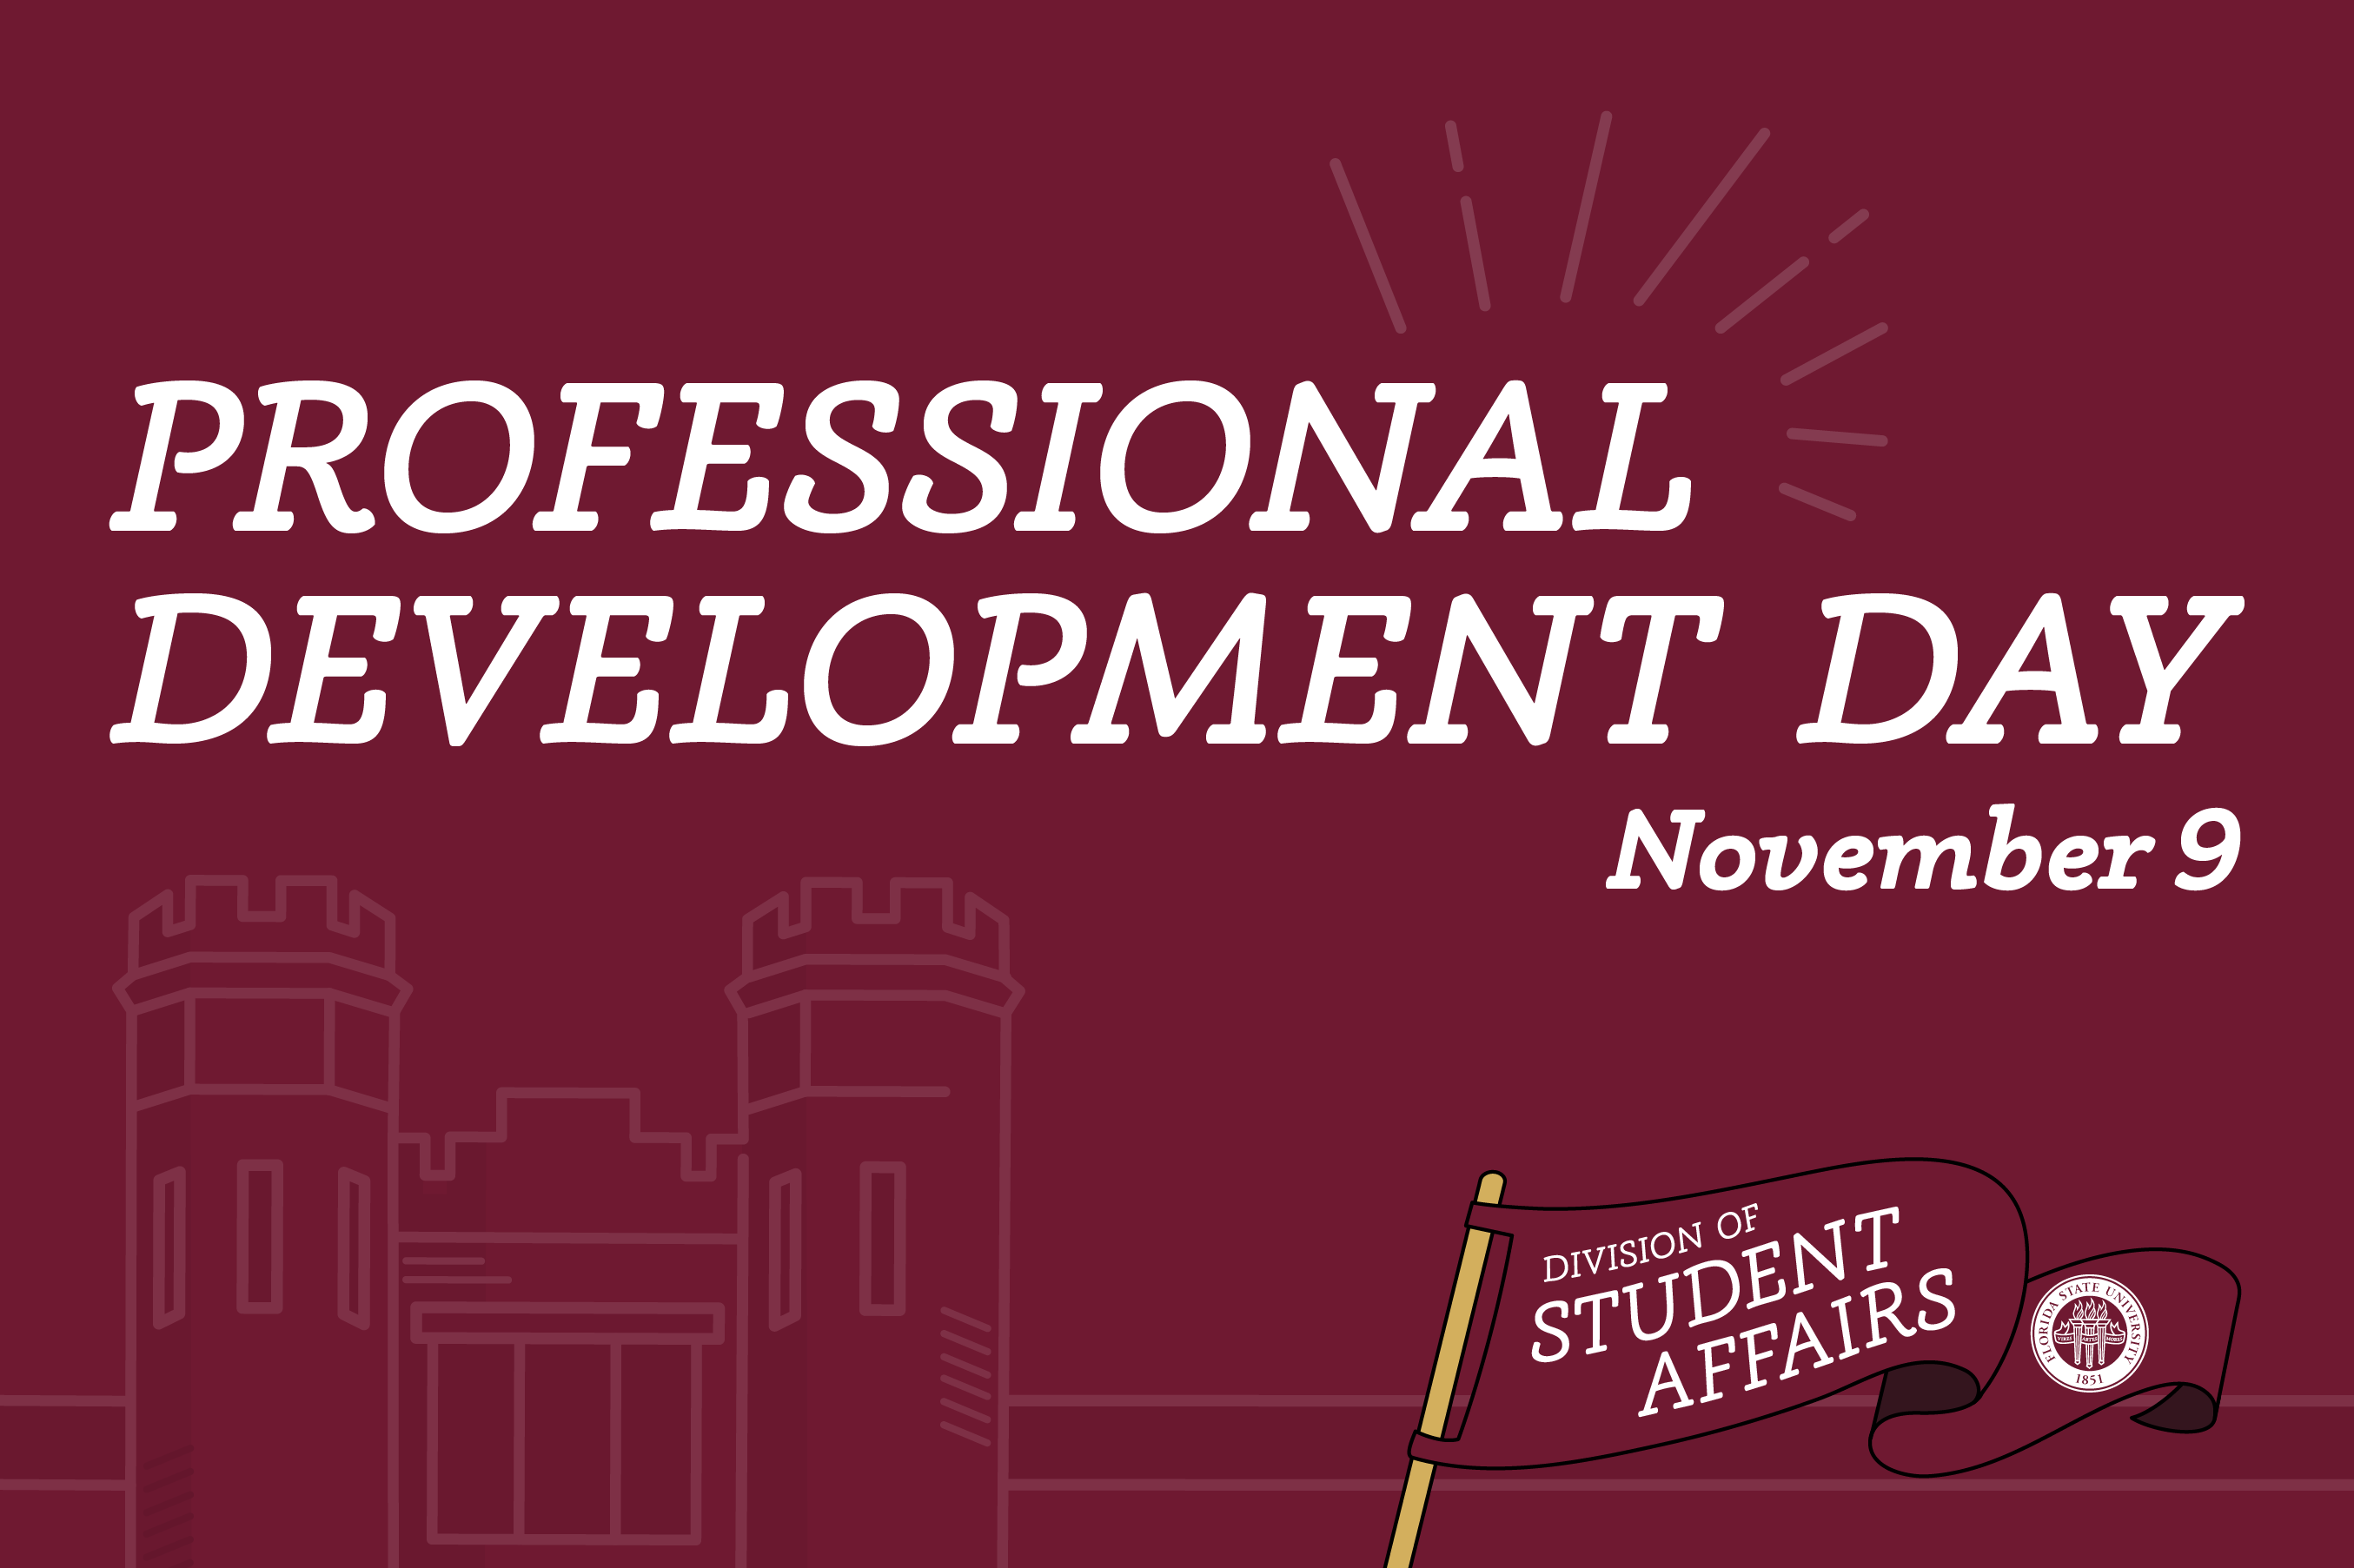 professional development day November 9 teaser banner